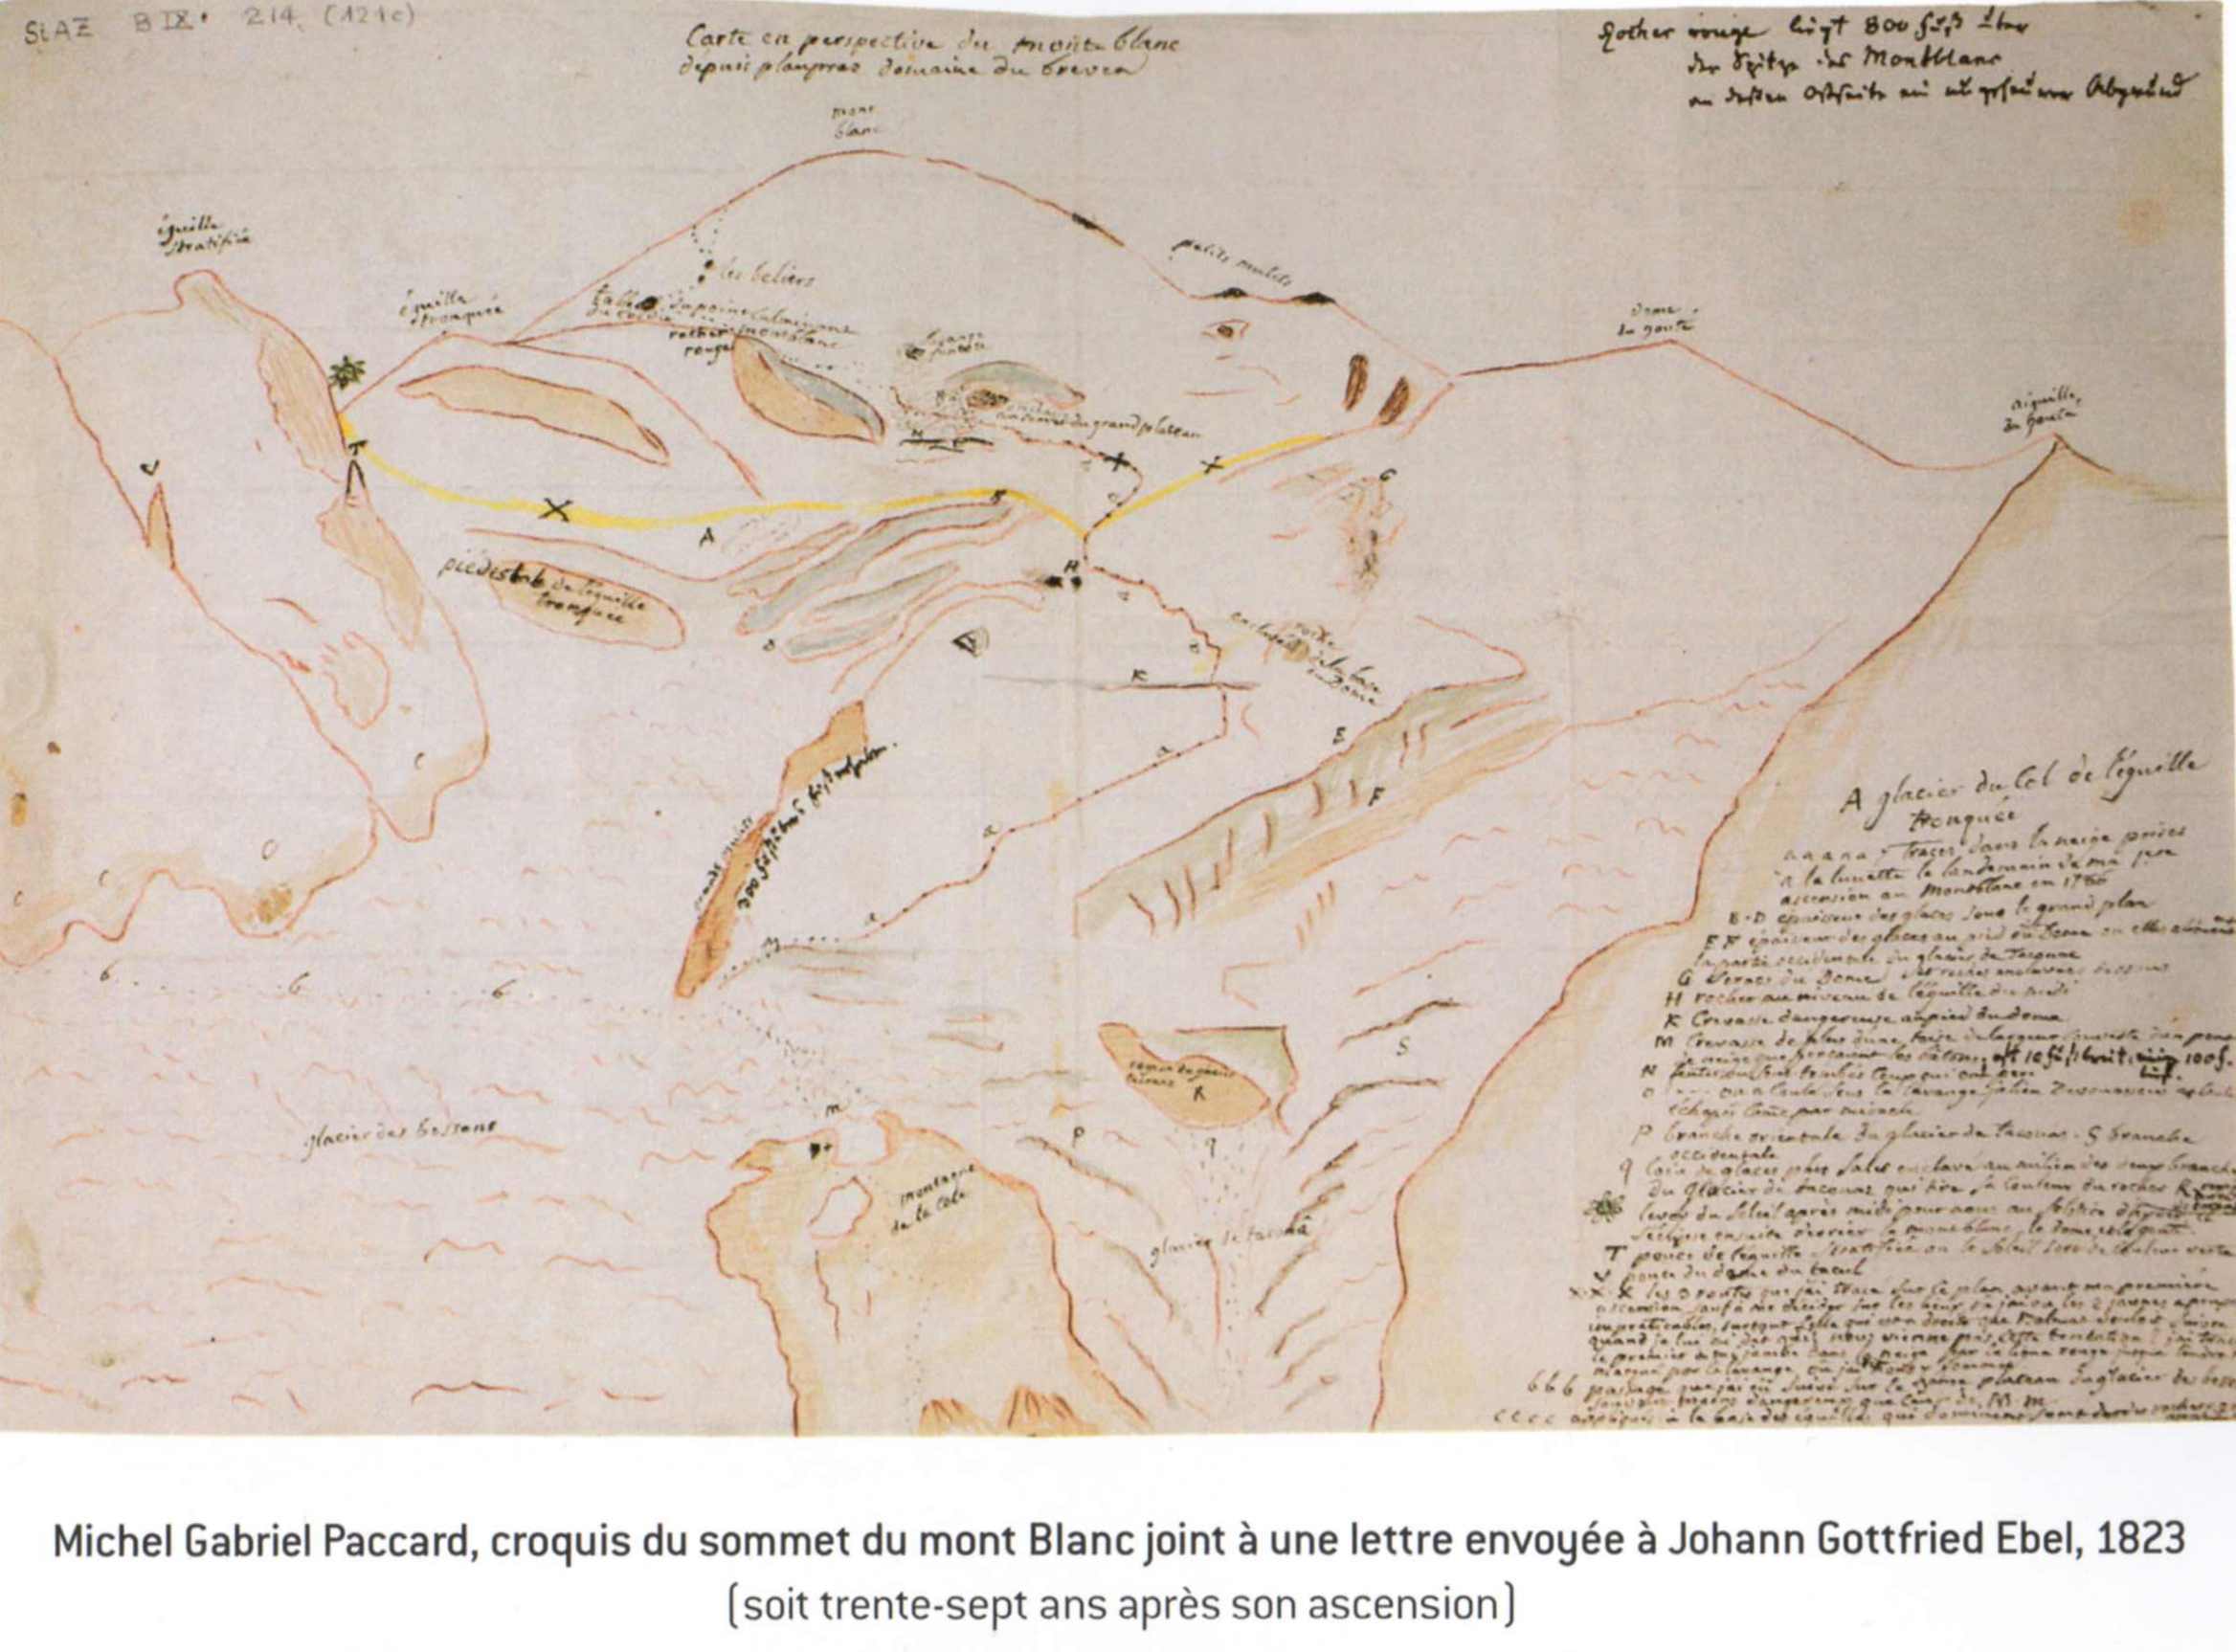 Набросок МИшеля Паккара маршрута первого восхождения на Монблан. Из письма к Johann Gottfried Ebel, 1823 год